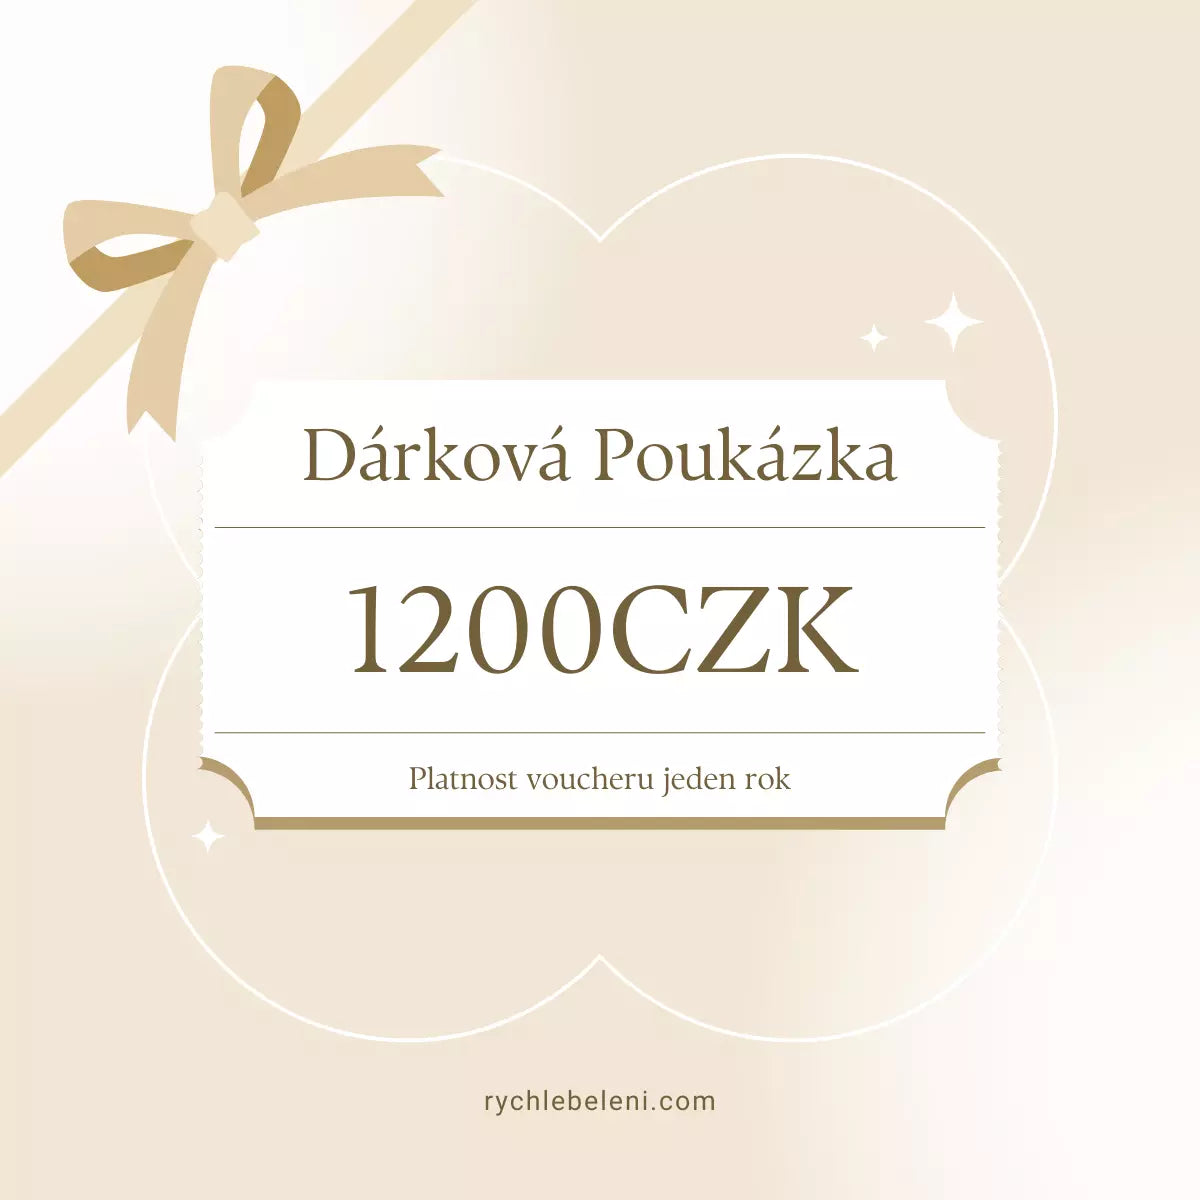 darkova poukazka 1200